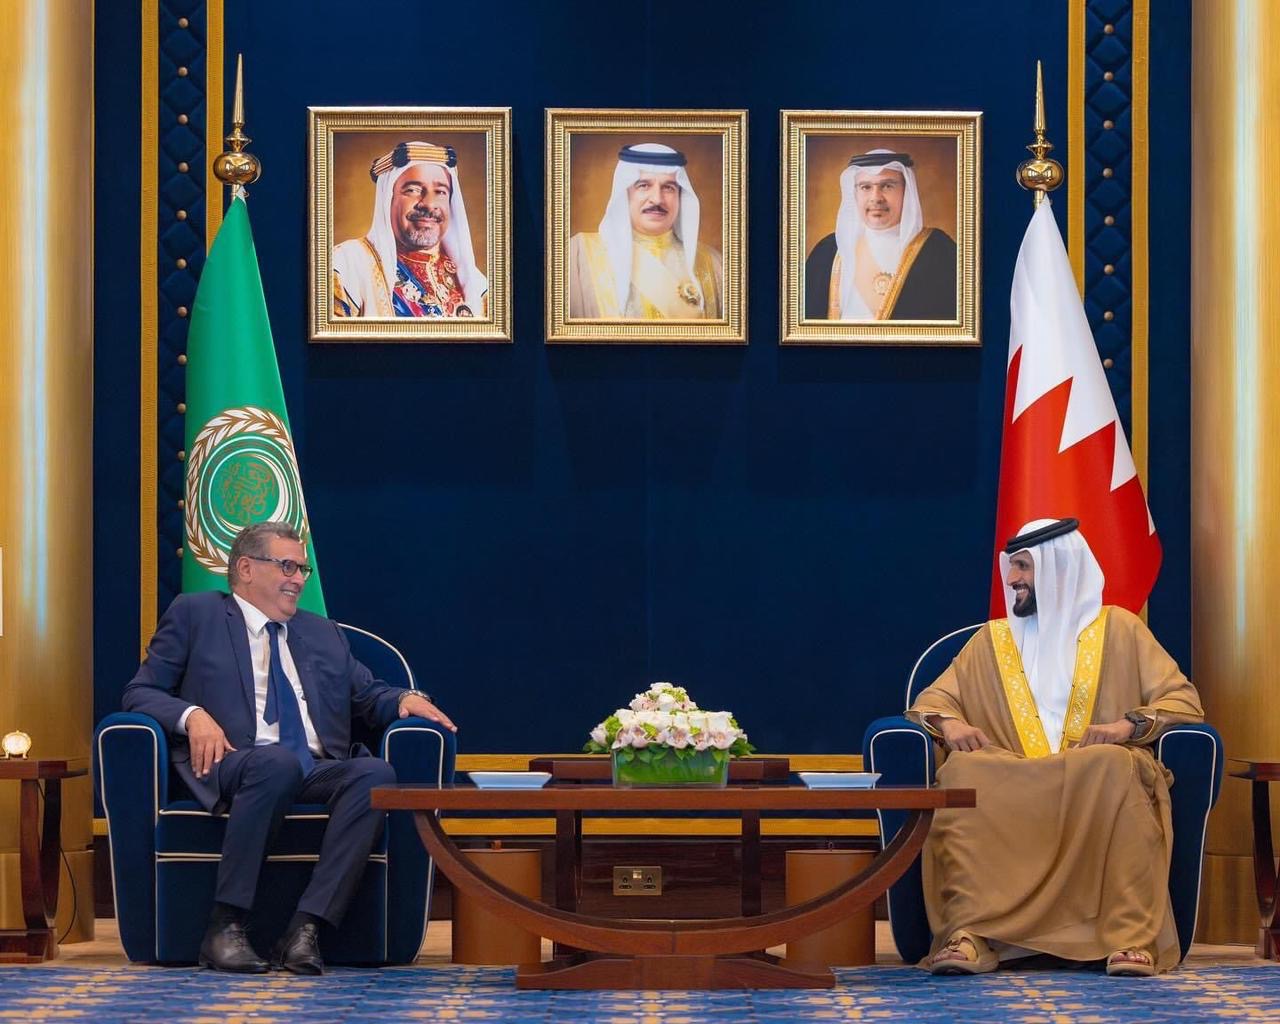 رئيس الحكومة يحل بالمنامة لتمثيل صاحب الجلالة في القمة العربية في دورتها الثالثة والثلاثين